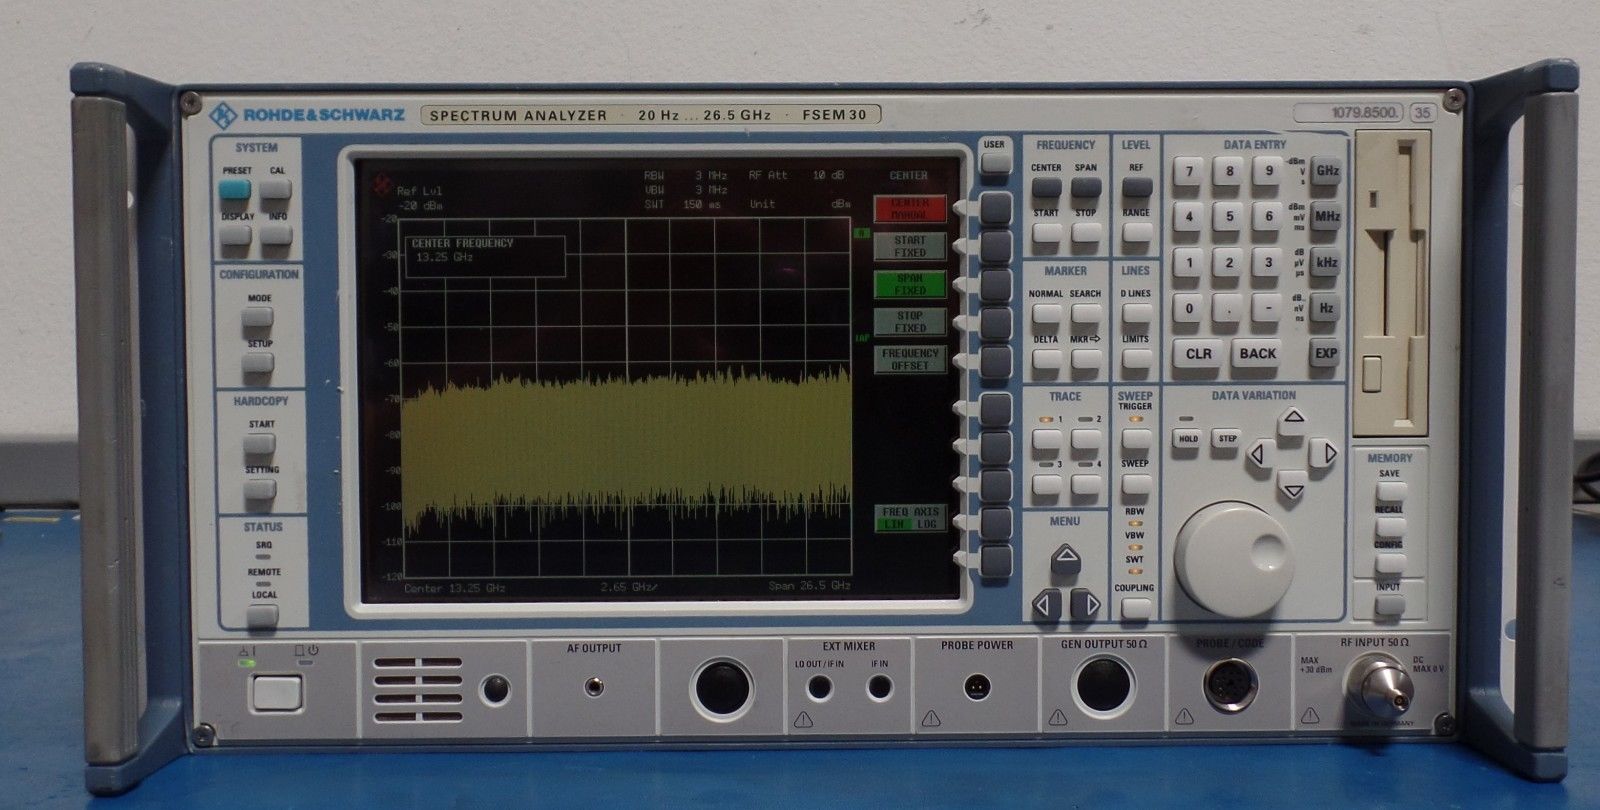 r-s-rohde-schwarz-fsem30-20hz-26-5-ghz-spectrum-analyzer-used-equipment-0.jpg